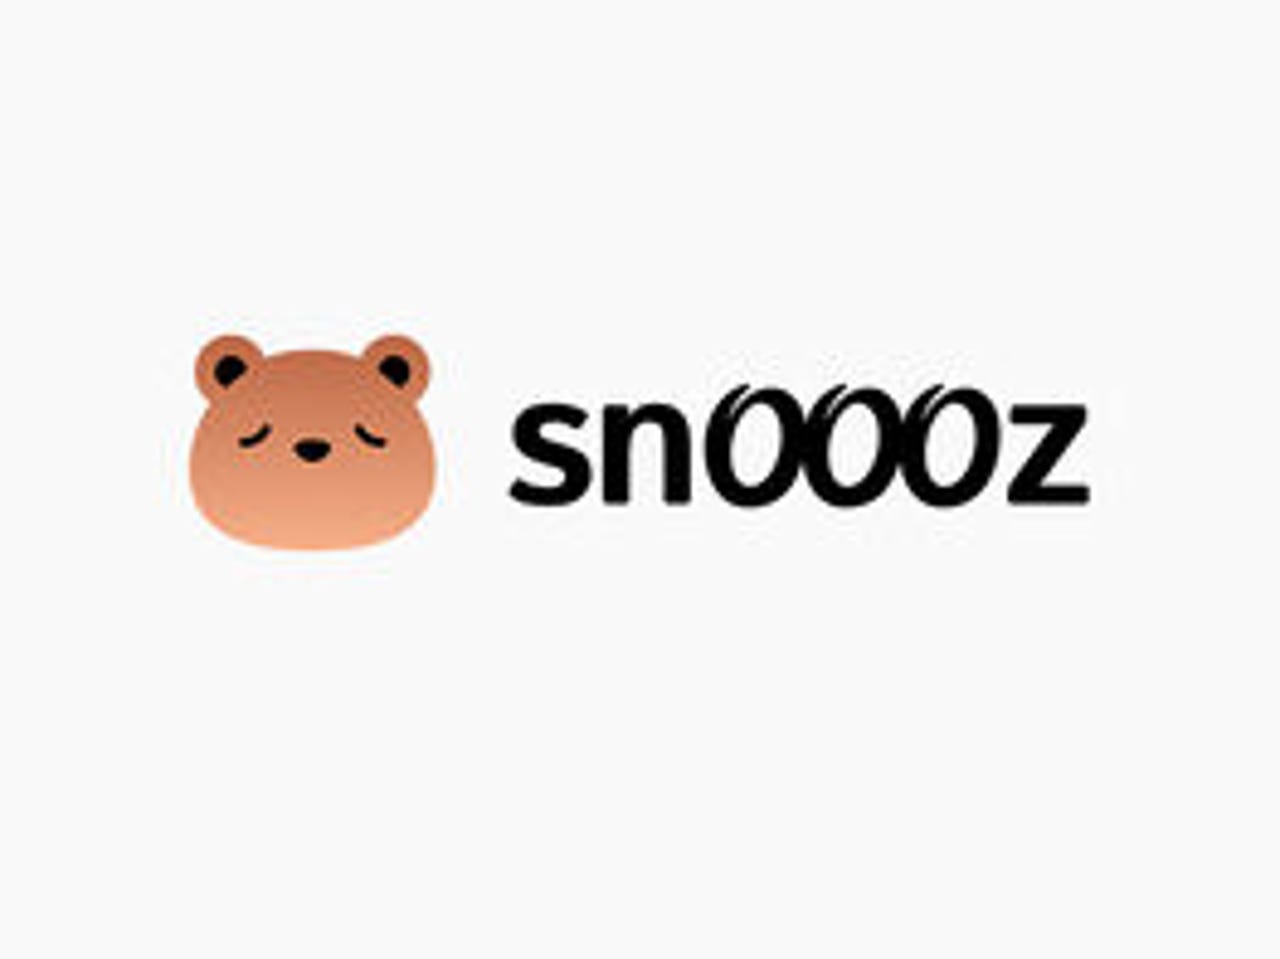 snoooz2